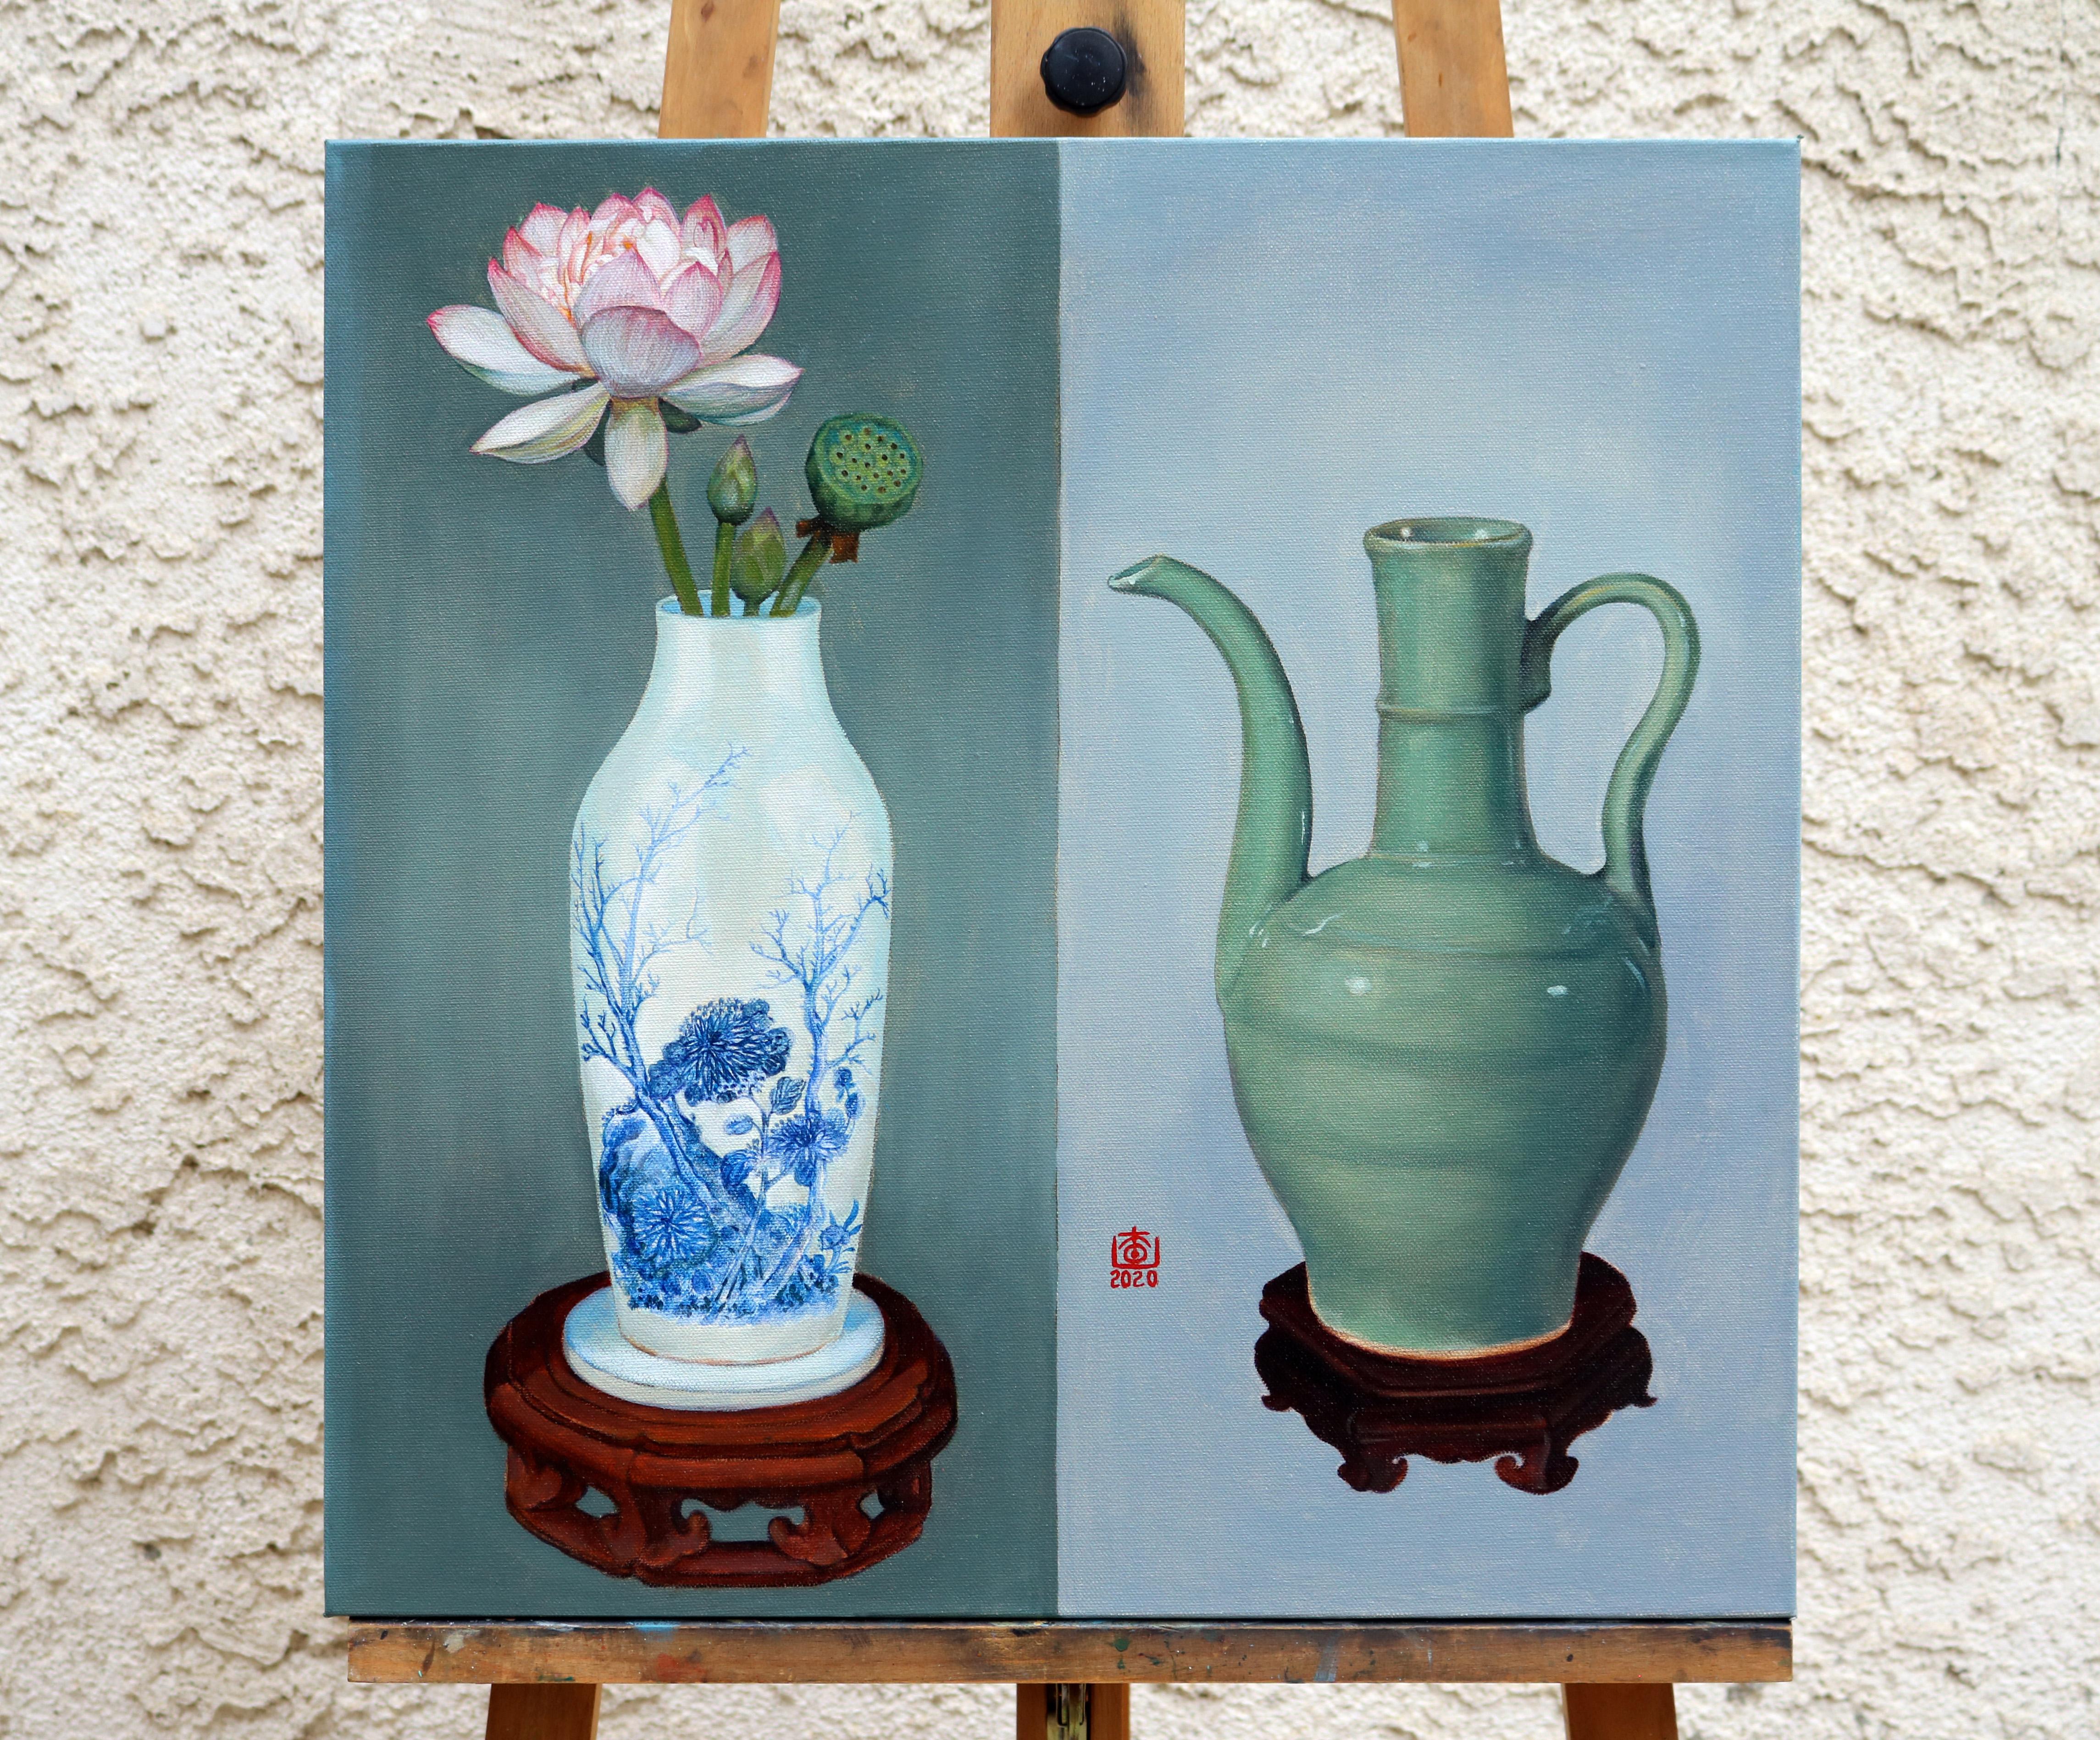 <p>Kommentare des Künstlers<br>Zwei chinesische Vasen liegen auf einem Hintergrund aus verschiedenen Grautönen in dem Werk des Künstlers Guigen Zha. Das Stillleben bezieht sich auf kulturelle Relikte aus der Song-Dynastie in China. Der Keramikkrug